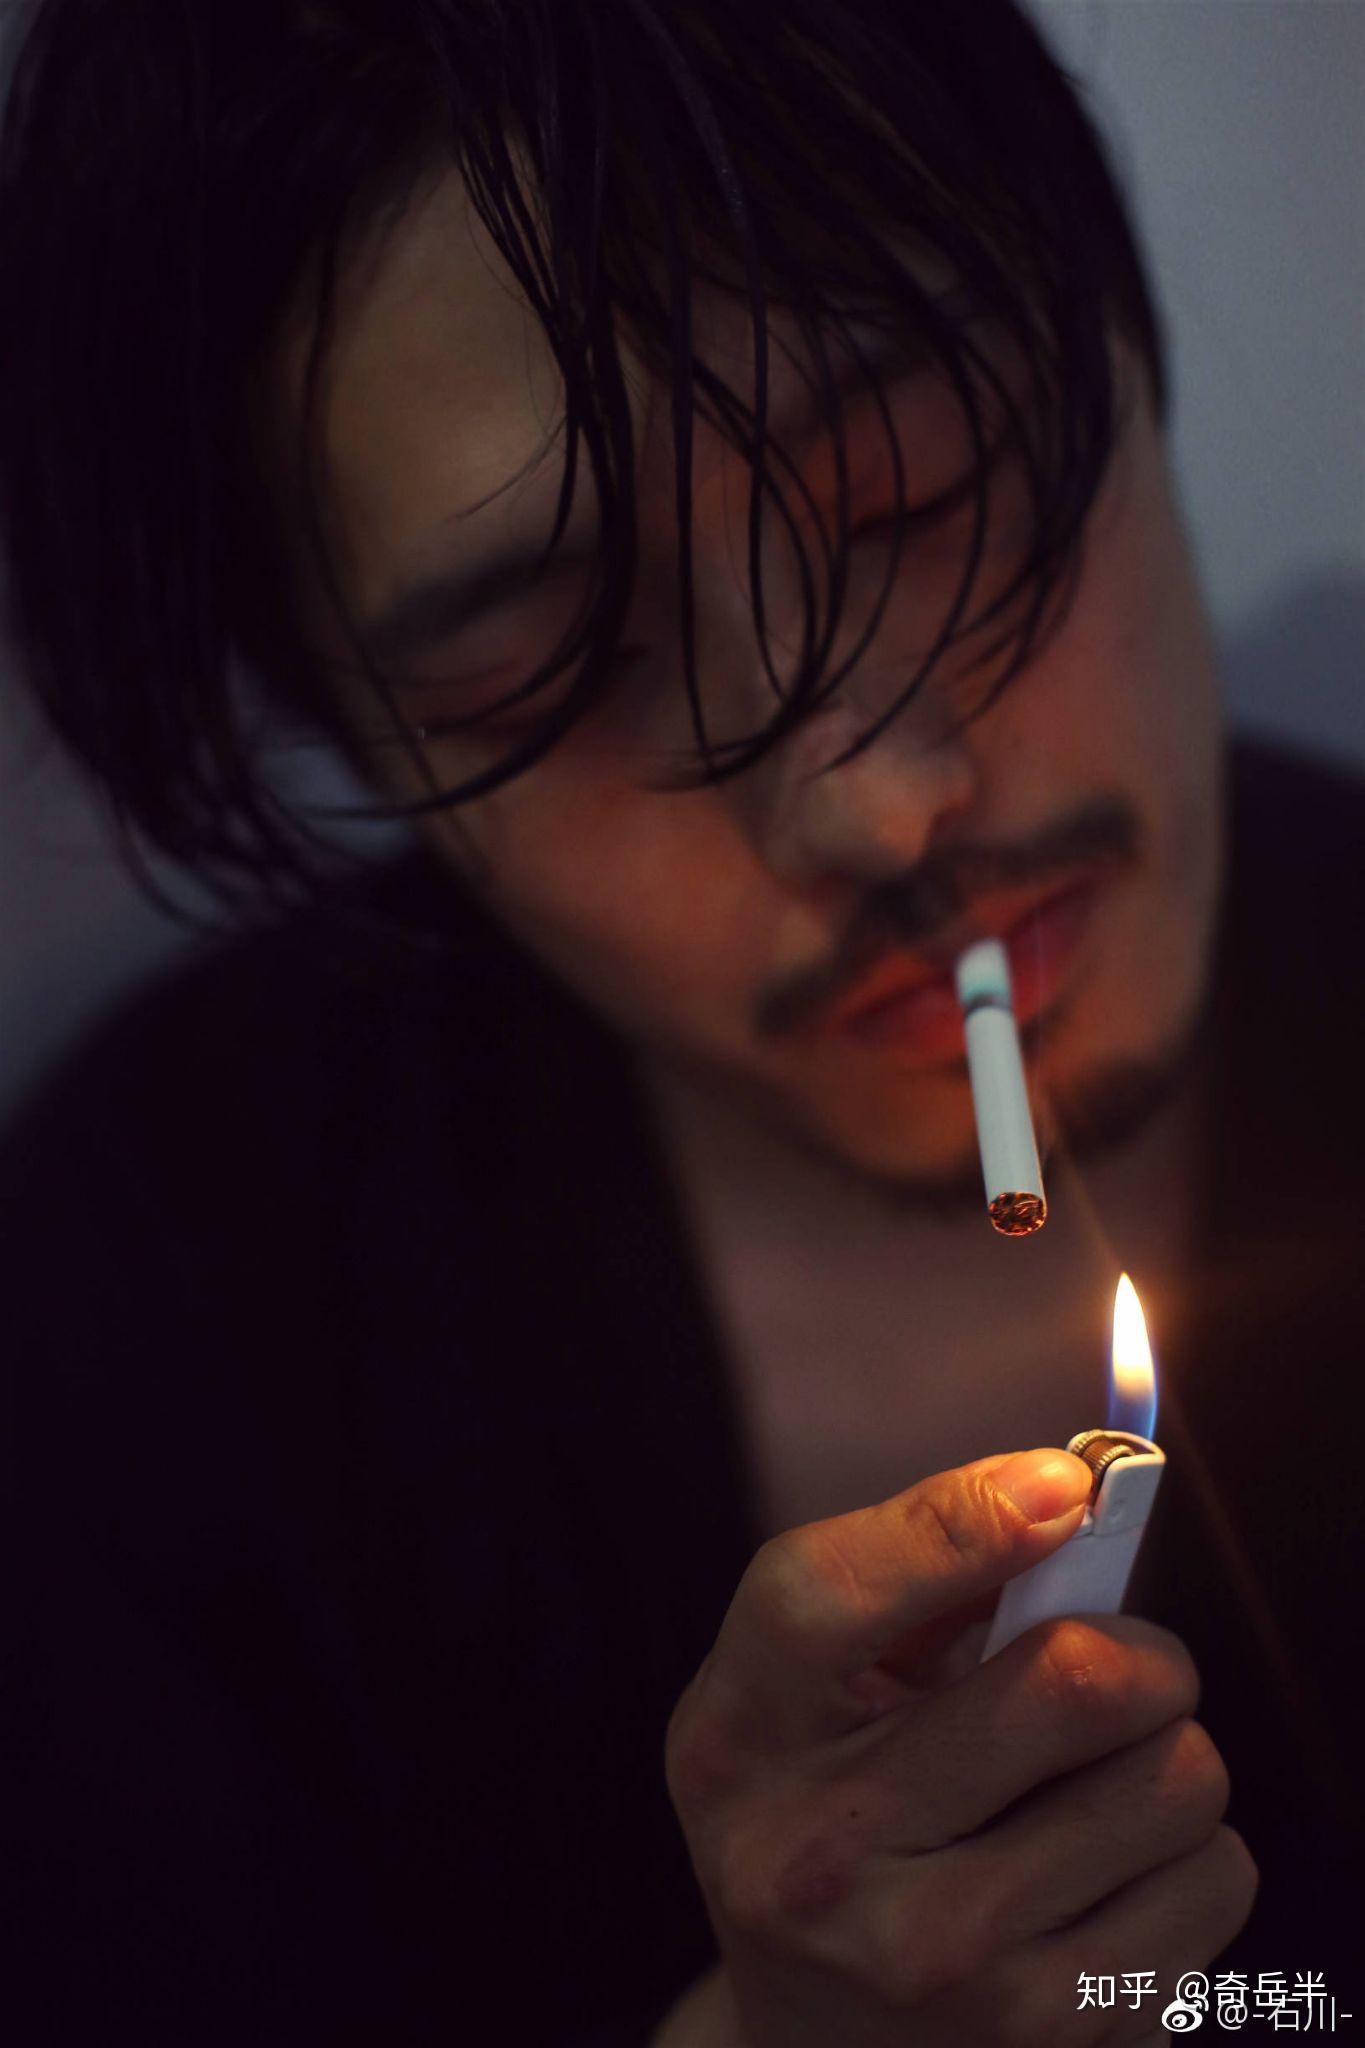 抽烟照片男伤感绝望图片